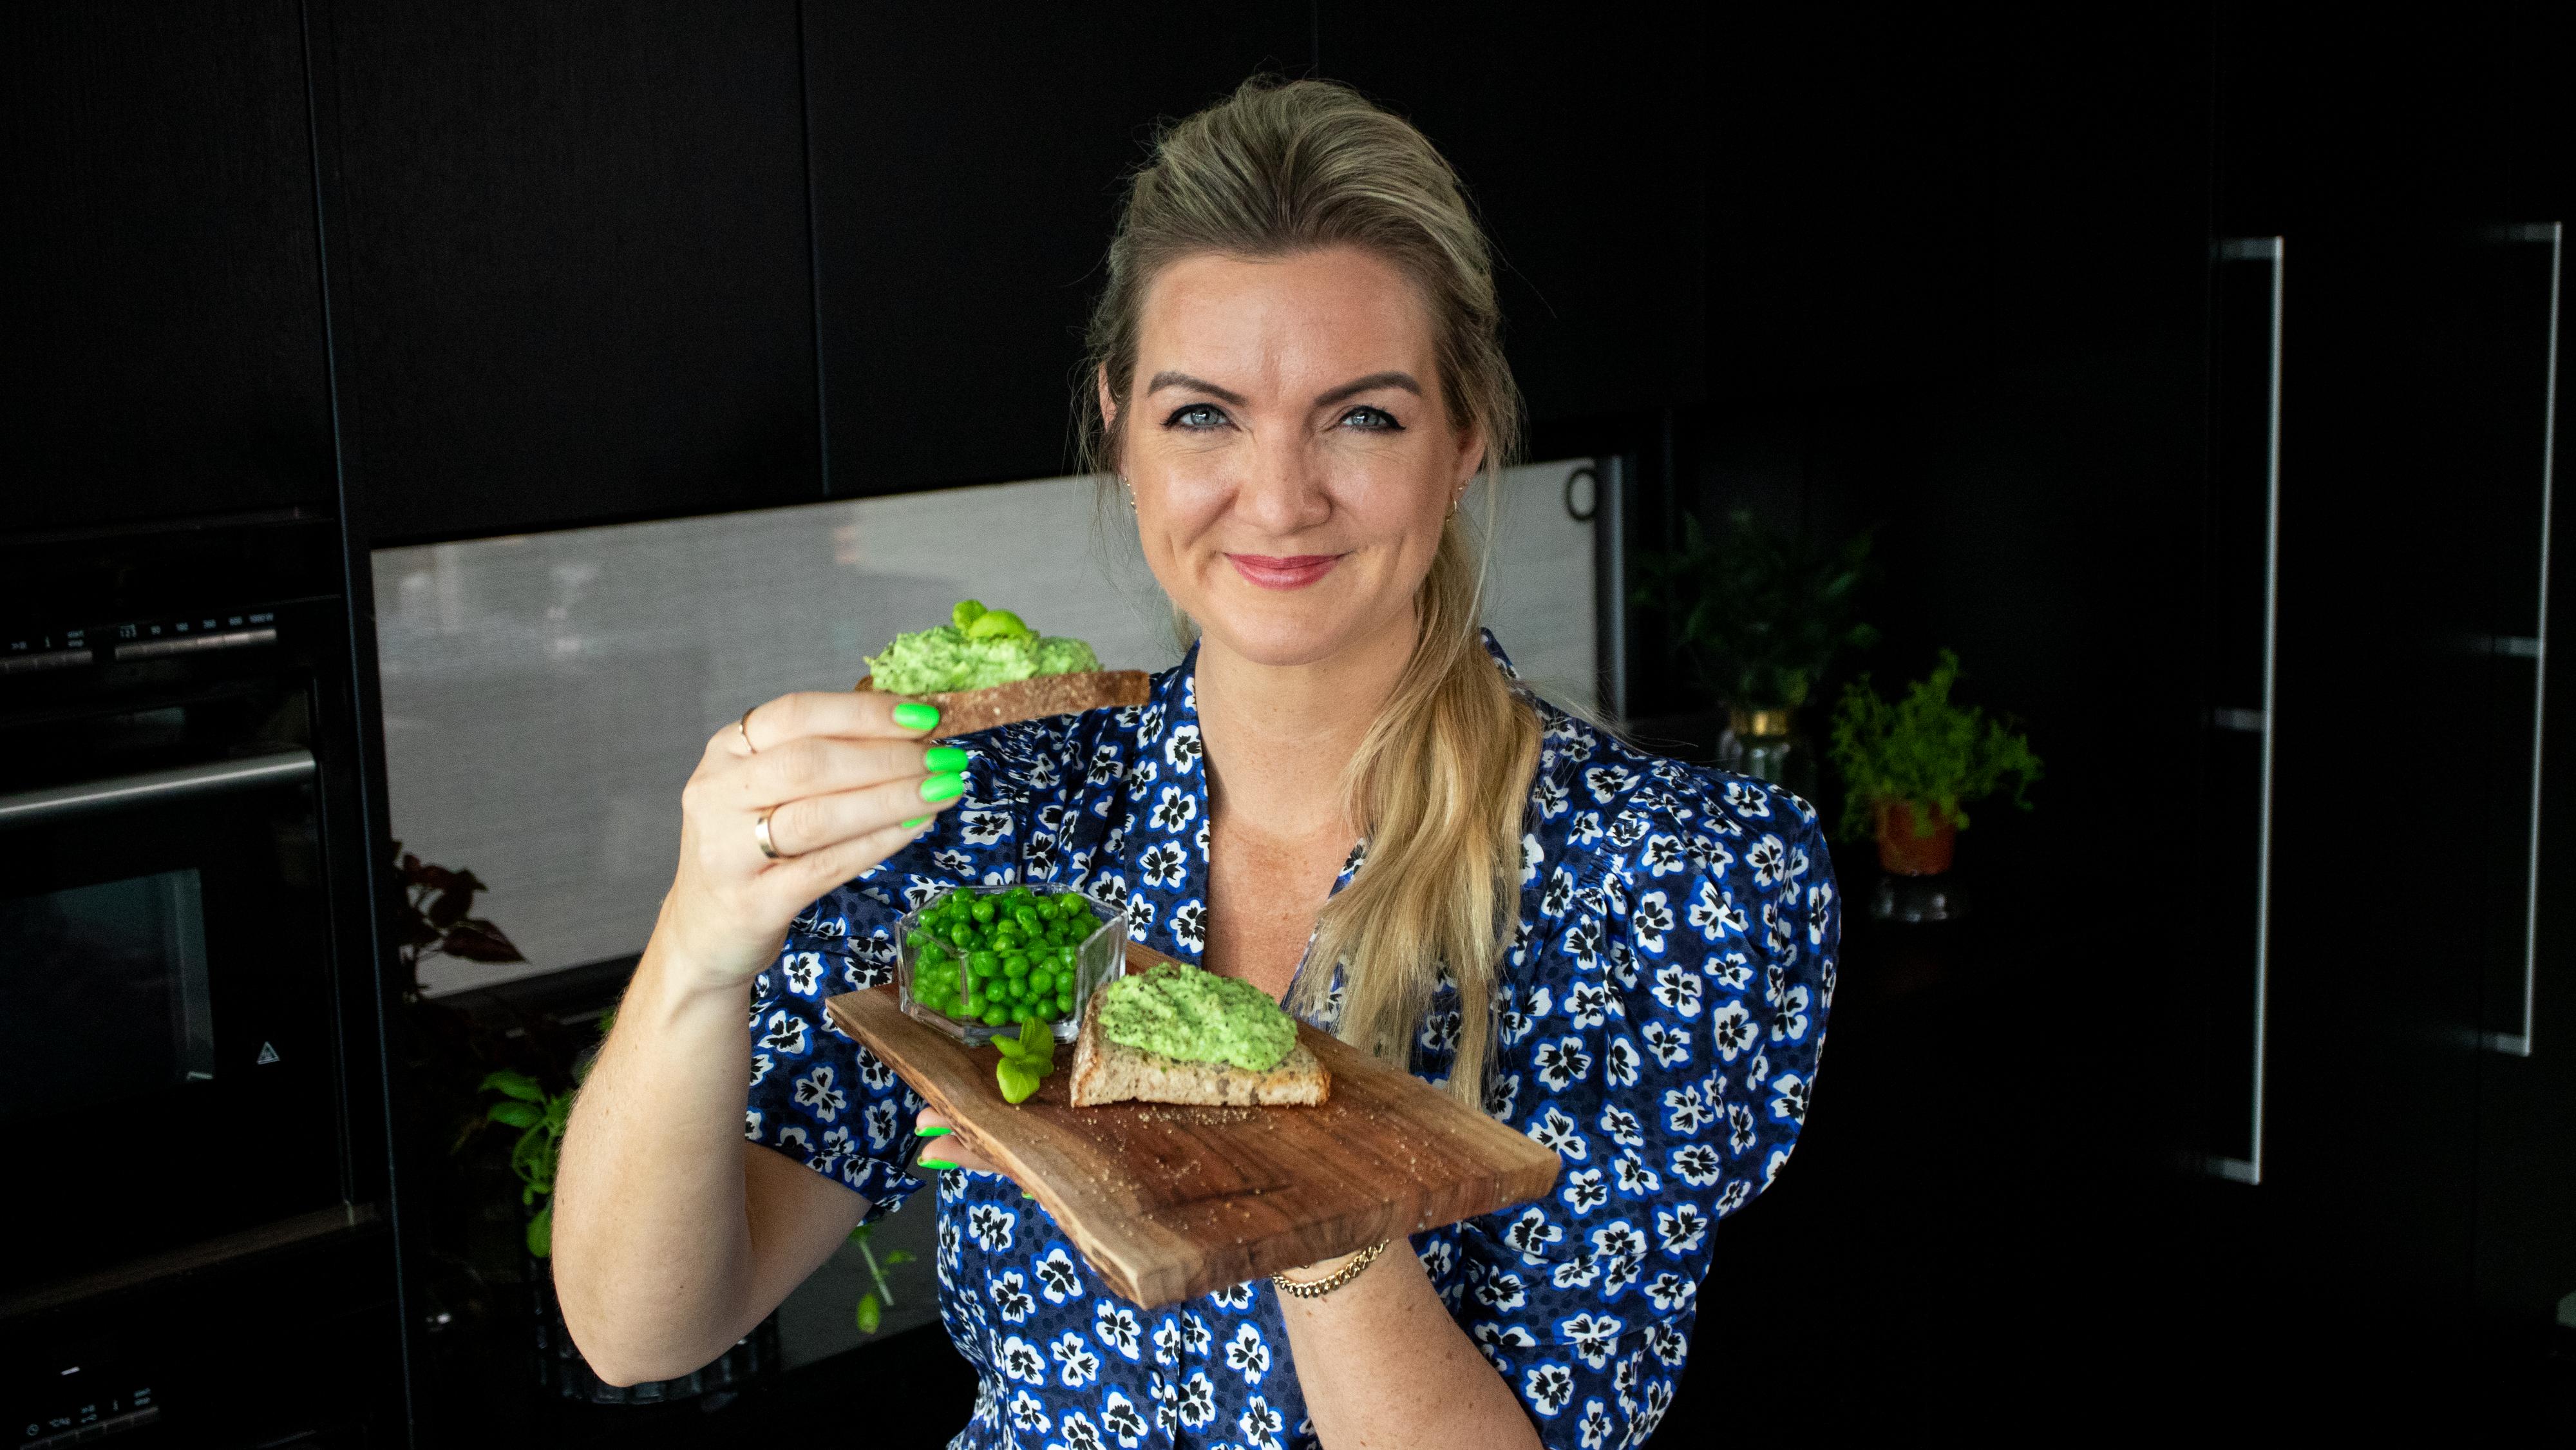 AVOKADO-ALTERNATIV: Vegetarentusiast Hanne-Lene Dahlgren elsker avokadotoast, men synes en ertetoast er et godt alternativ